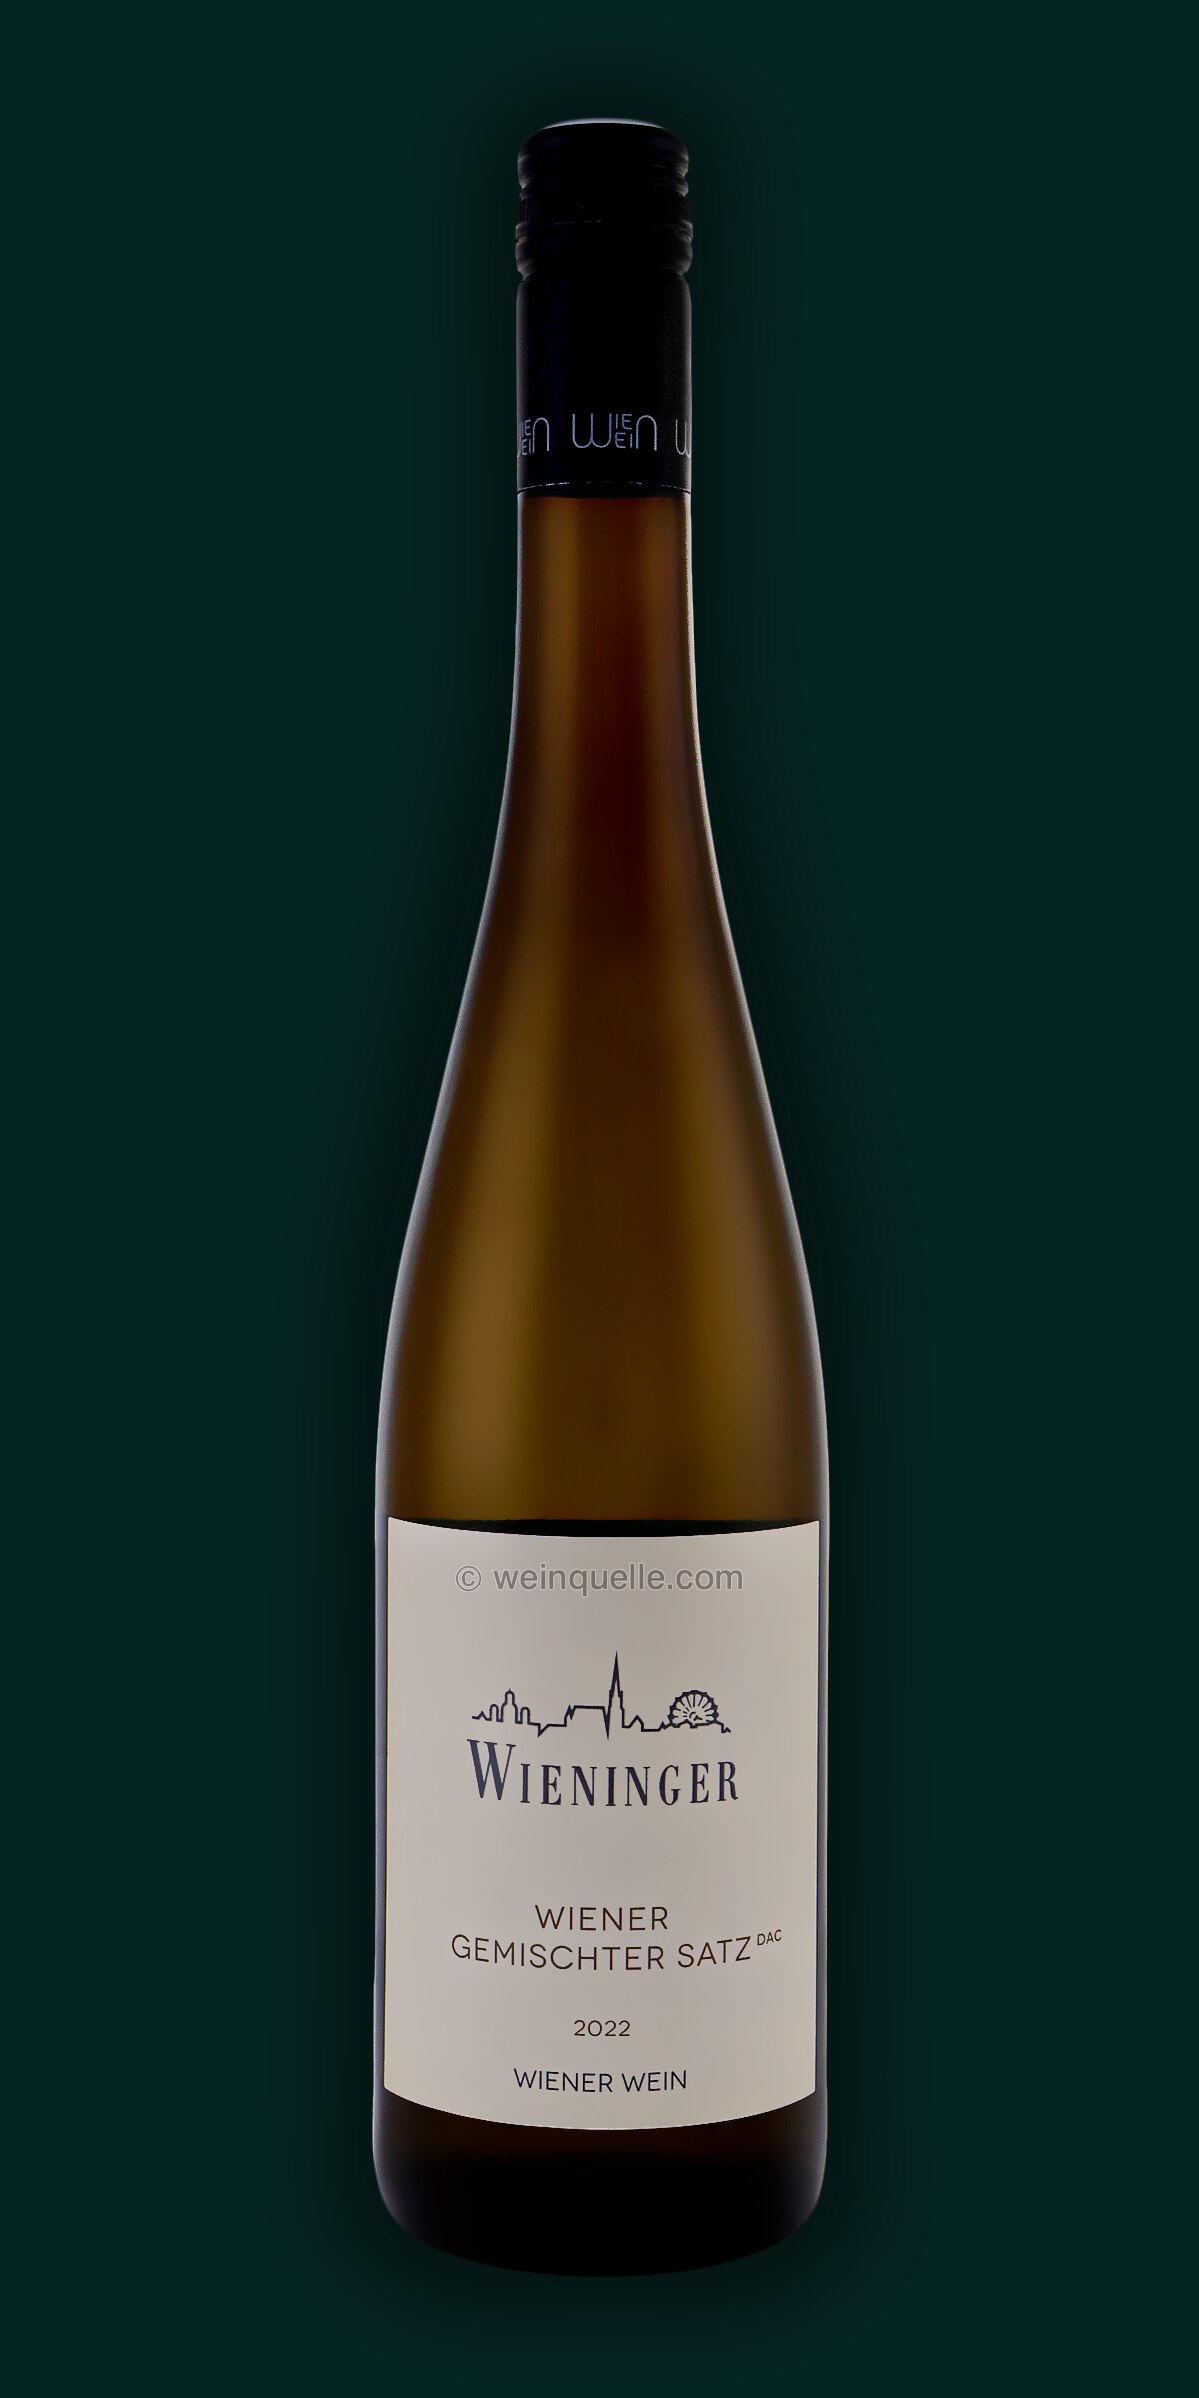 Weingut Fritz Wieninger Wiener Gemischter Weinquelle 13,95 Wien, € - Satz Lühmann